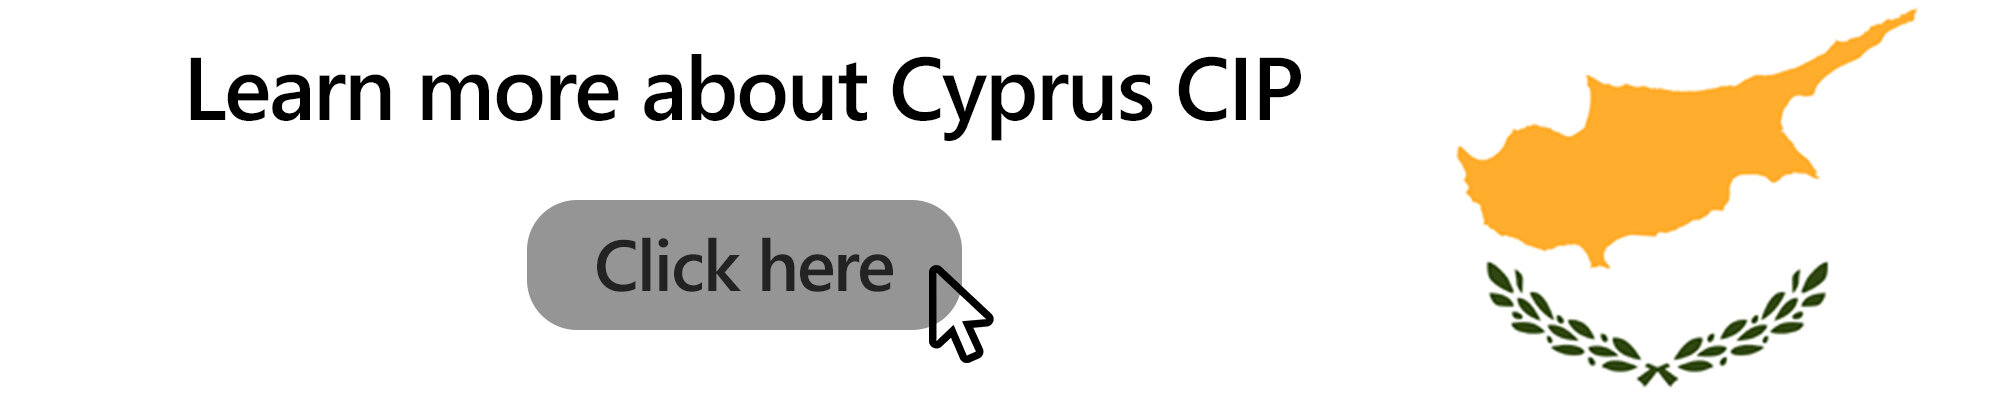 Cyprus CIP Learn More NTL Trust en.jpg